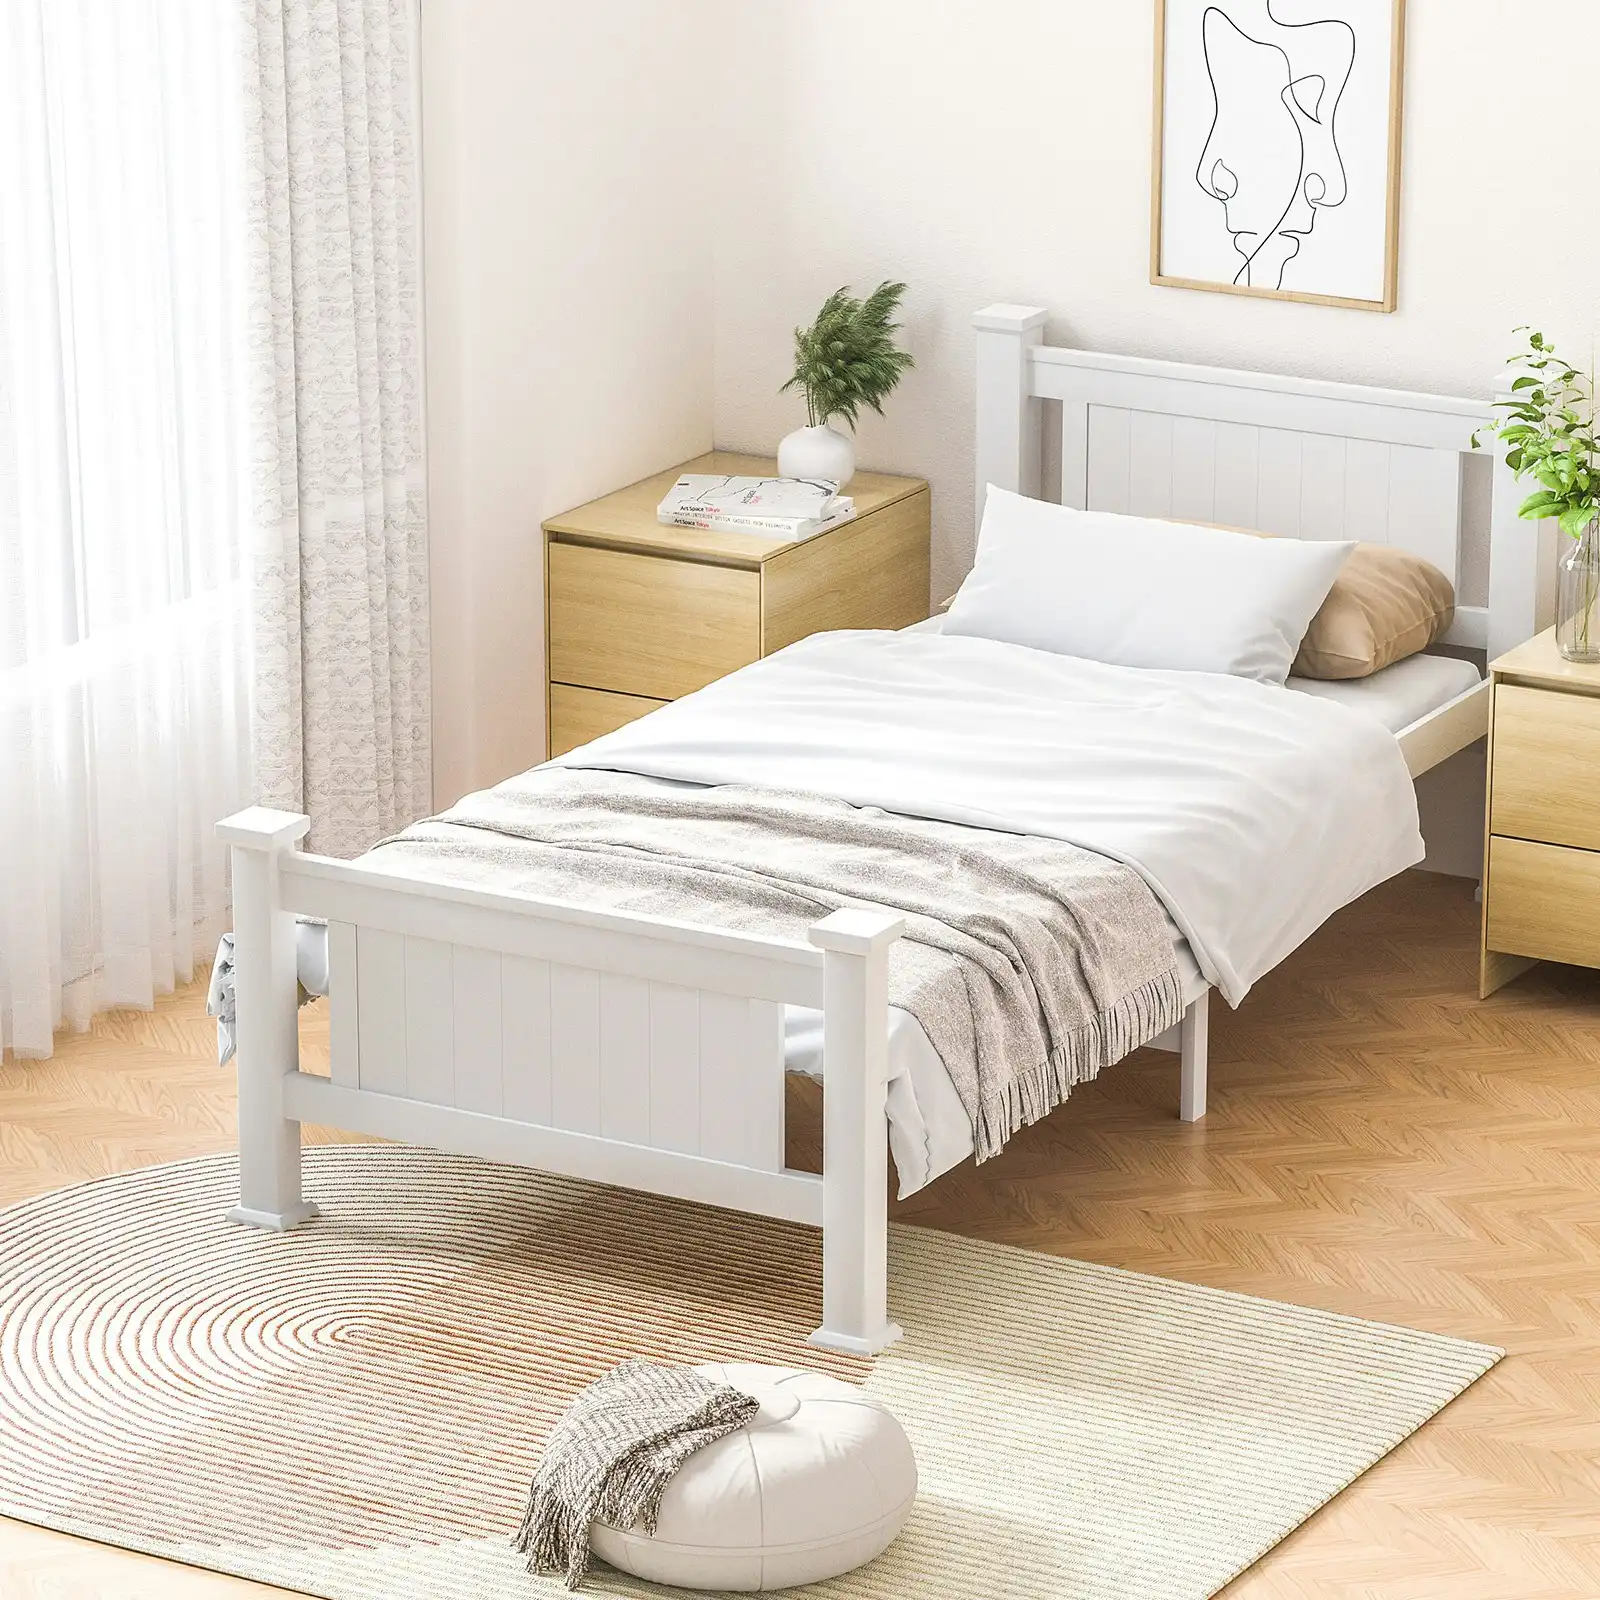 Oikiture Bed Frame King Single Size Pine Wooden Timber Base Platform Bedroom